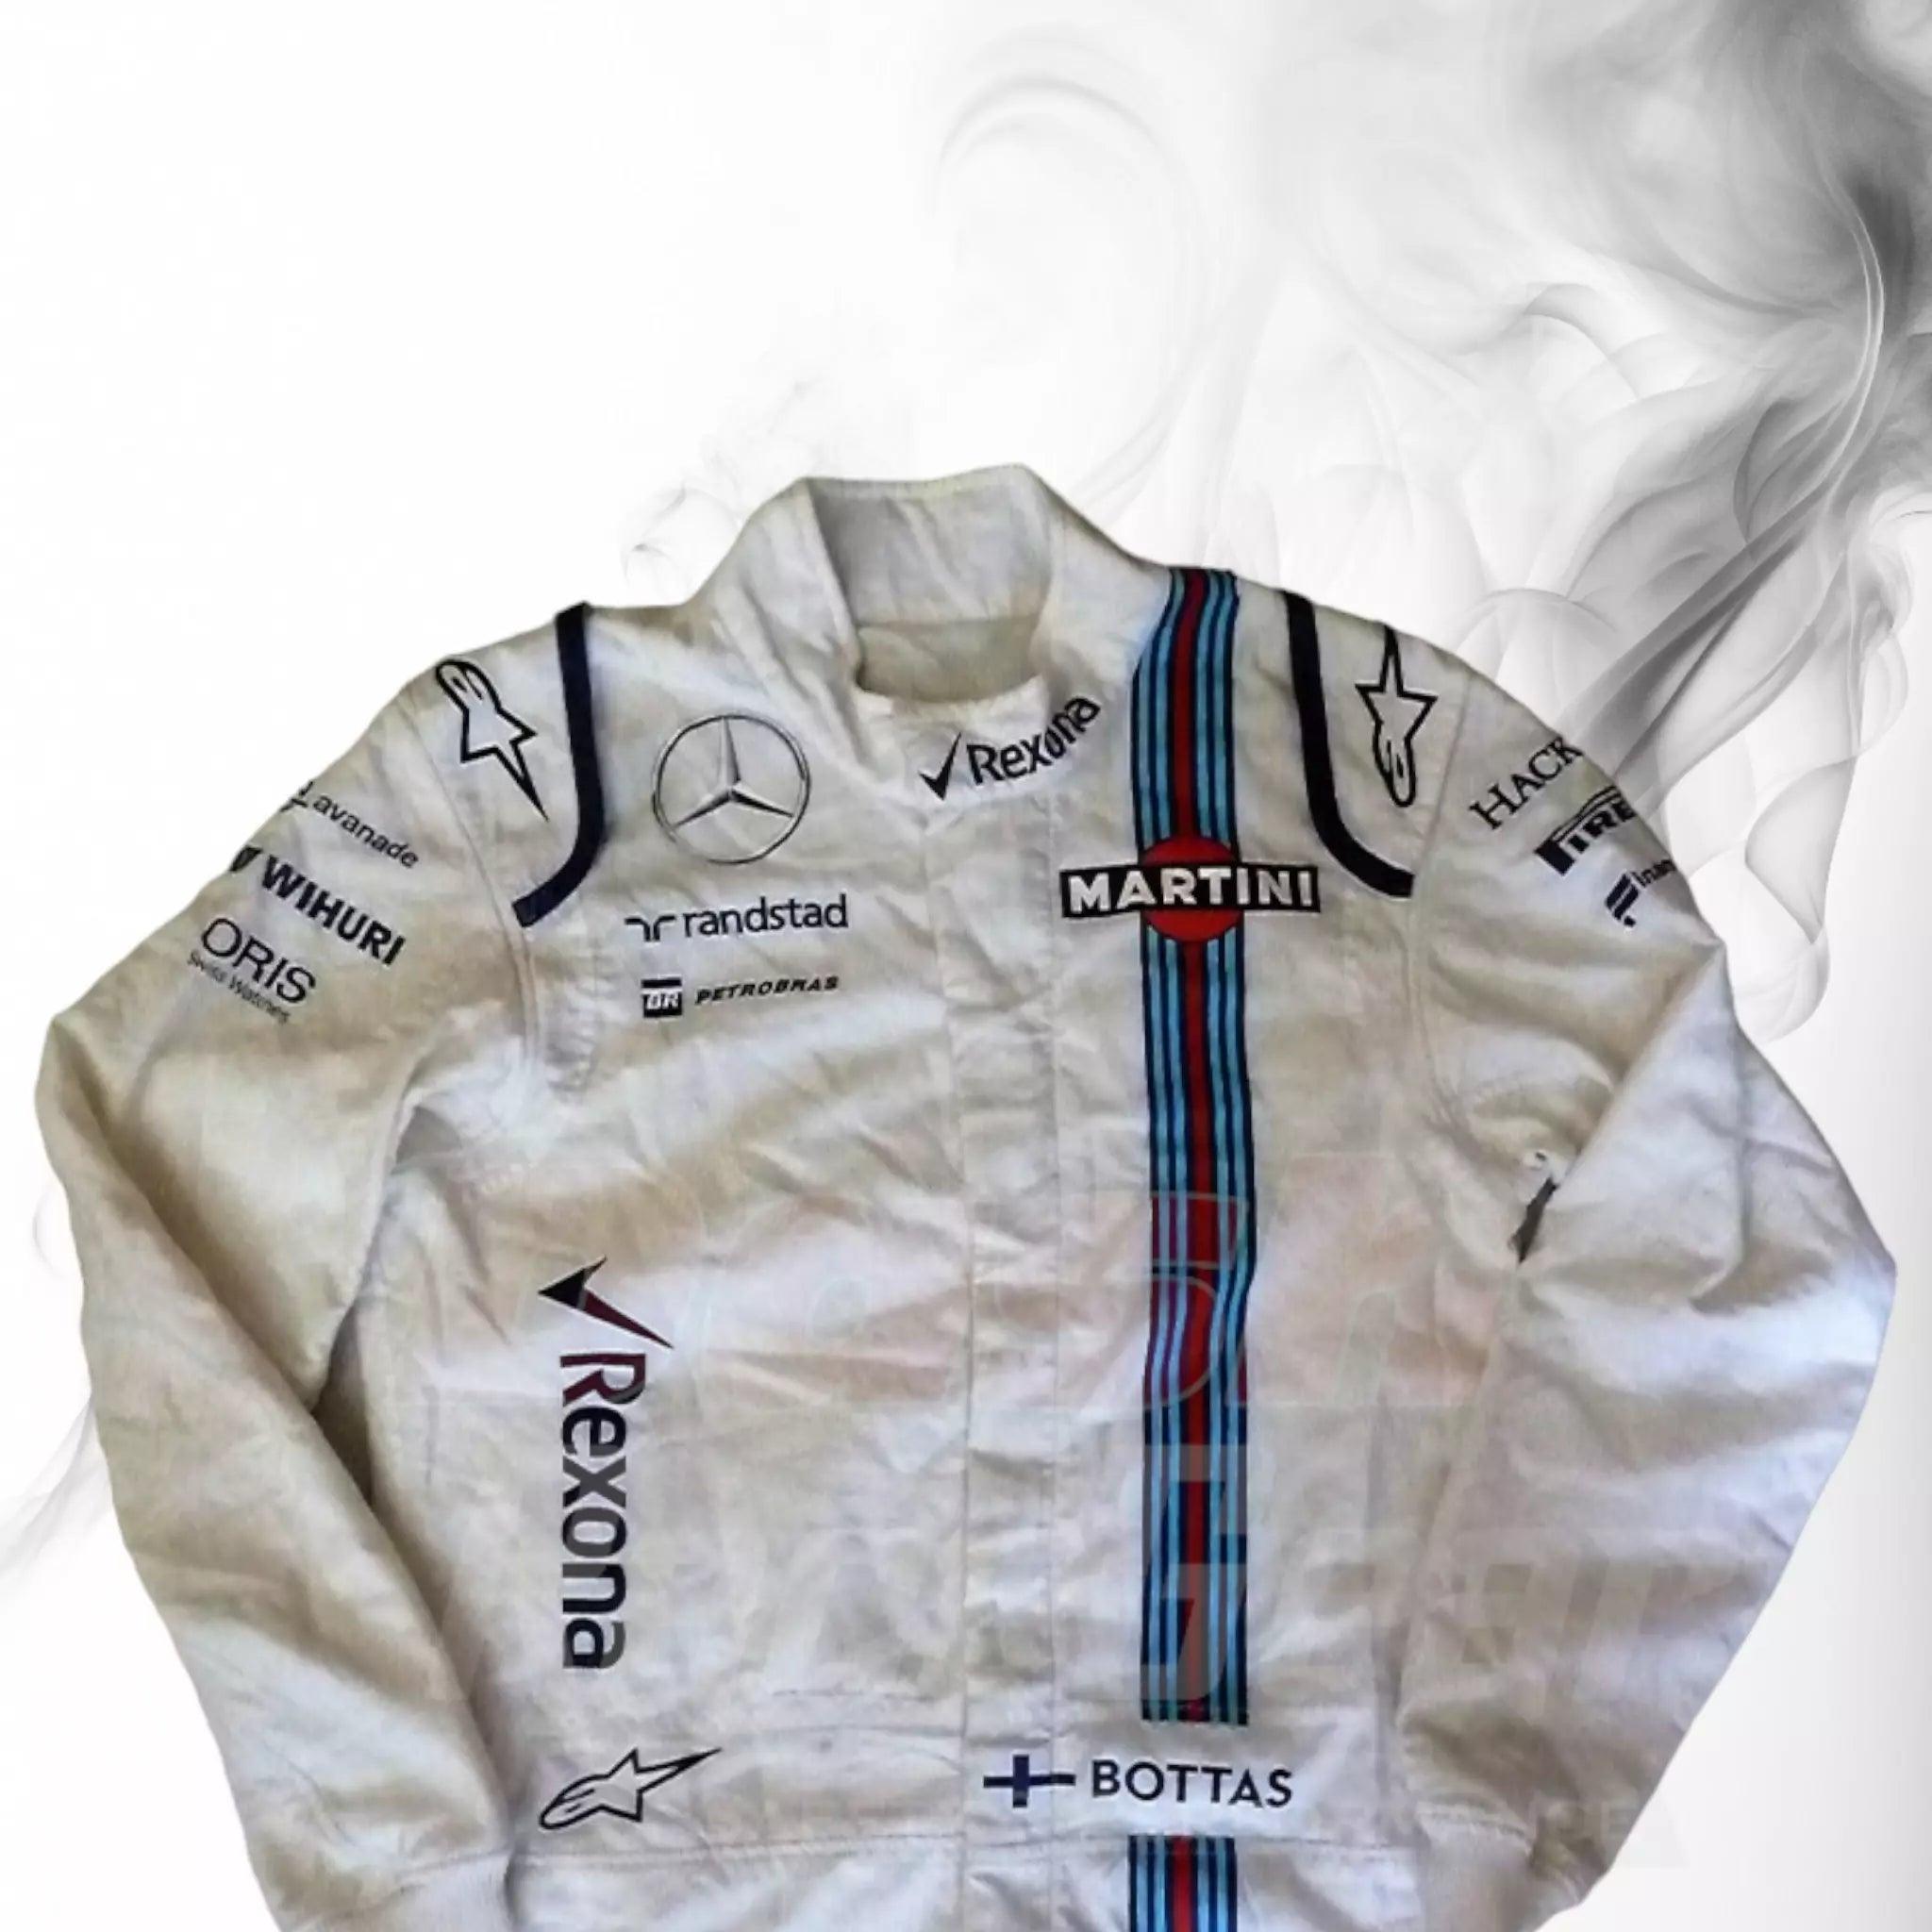 2016 Valtteri Bottas Martini F1 Race suit - Dash Racegear 